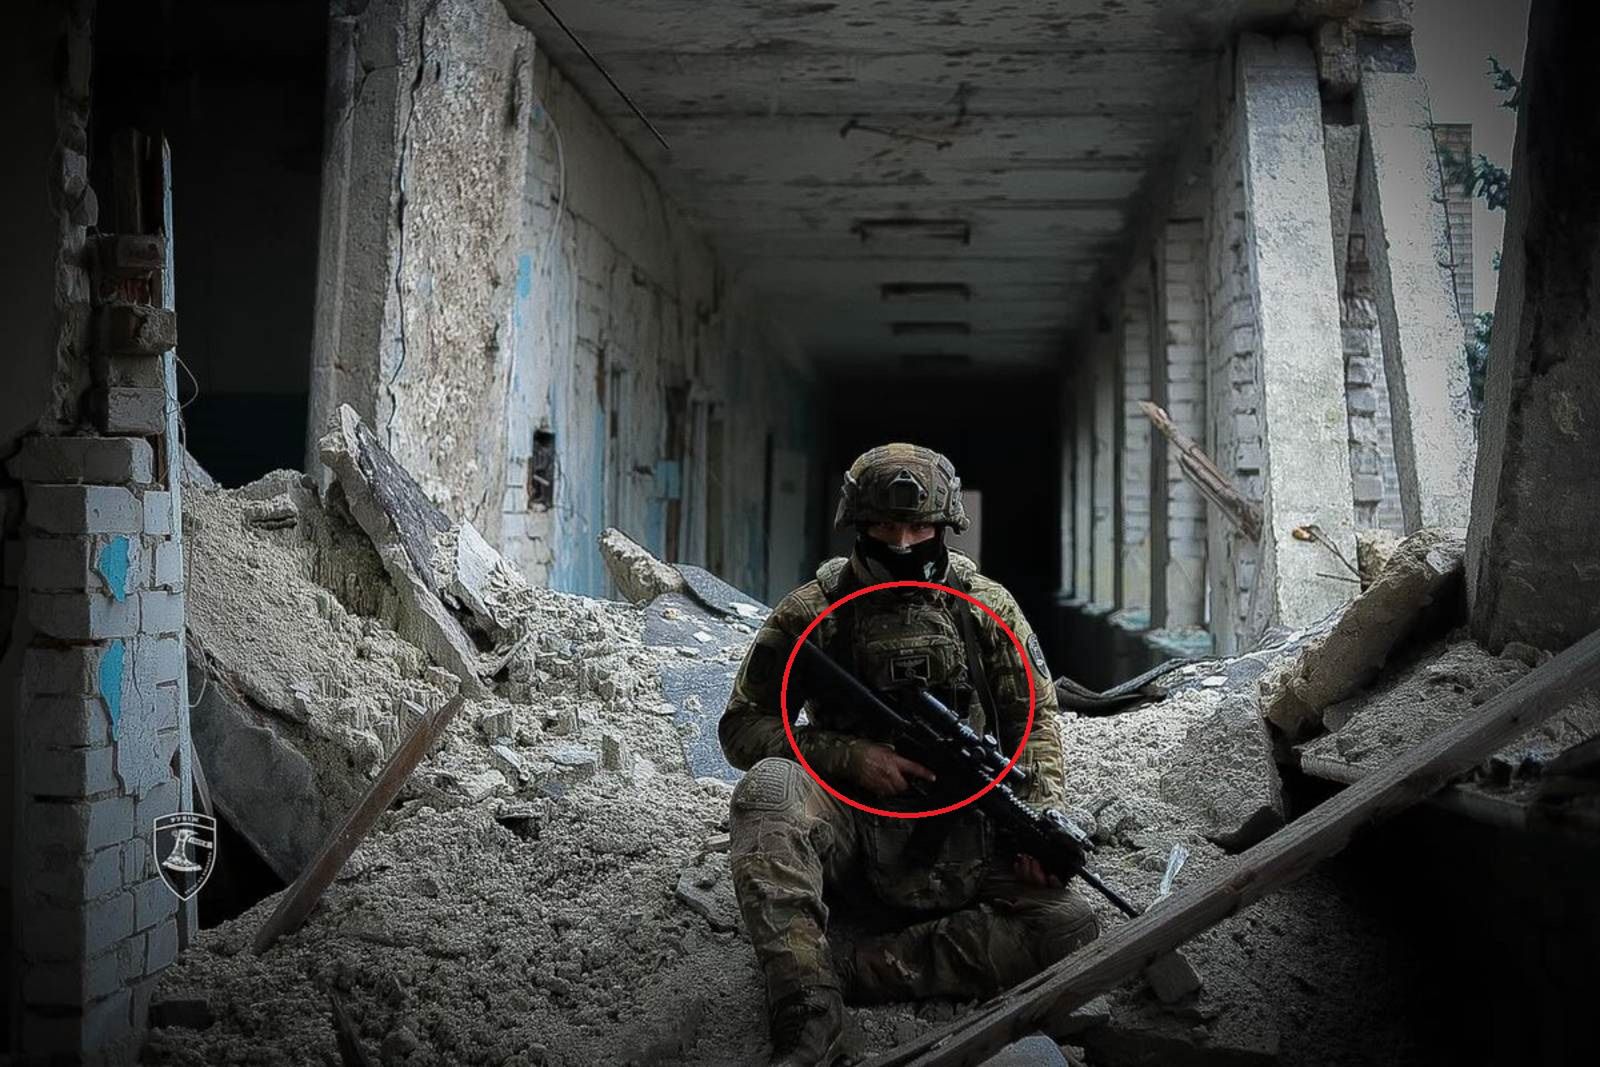 Pokazali ukraińskiego żołnierza. Ma skandaliczną naszywkę na mundurze